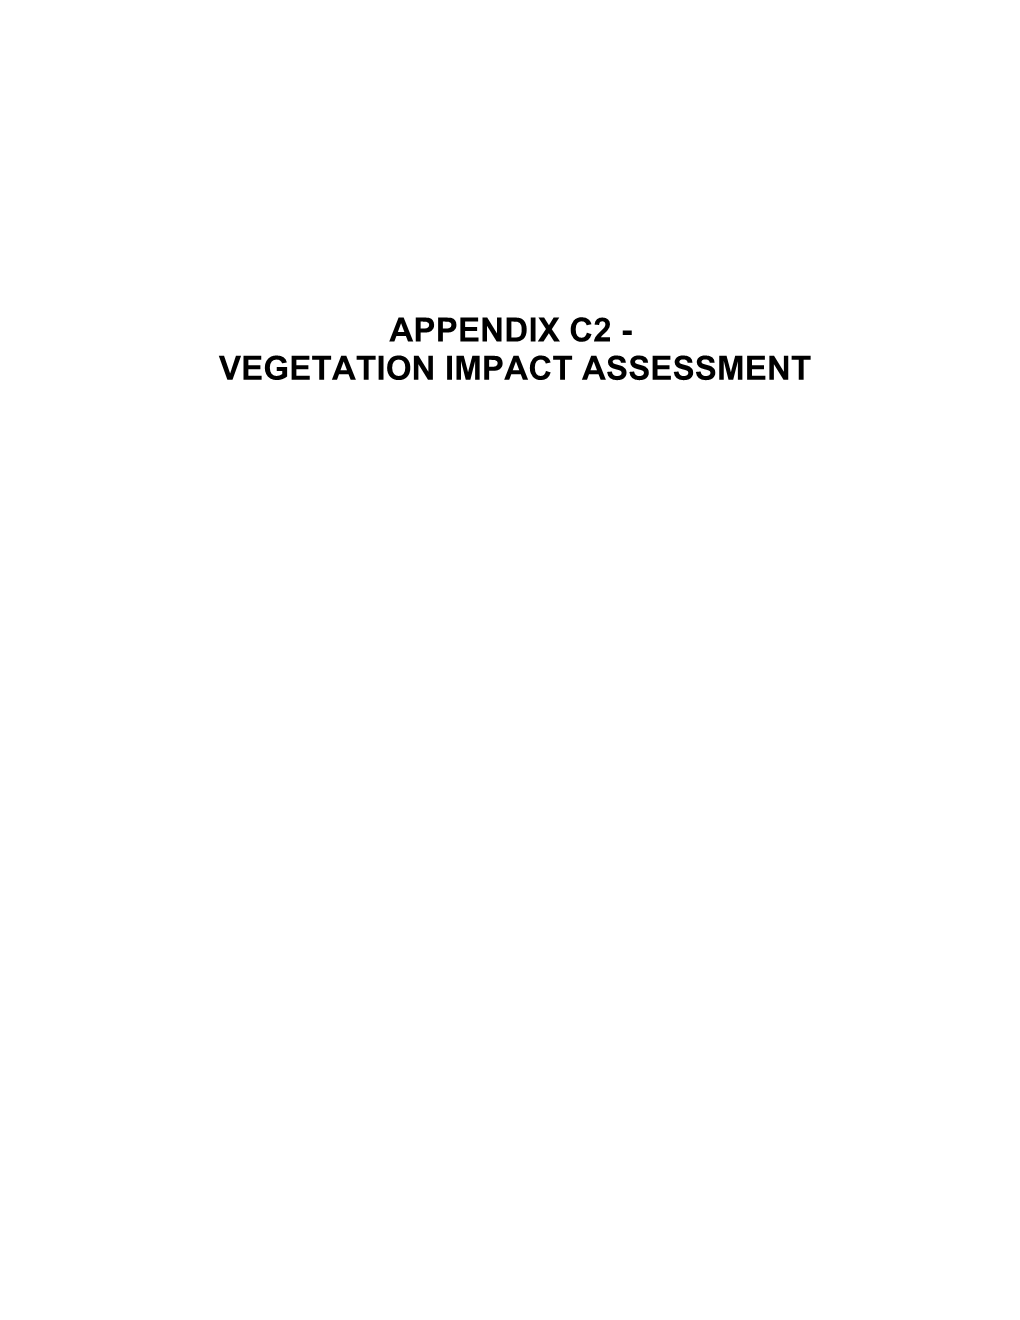 Vegetation Impact Assessment